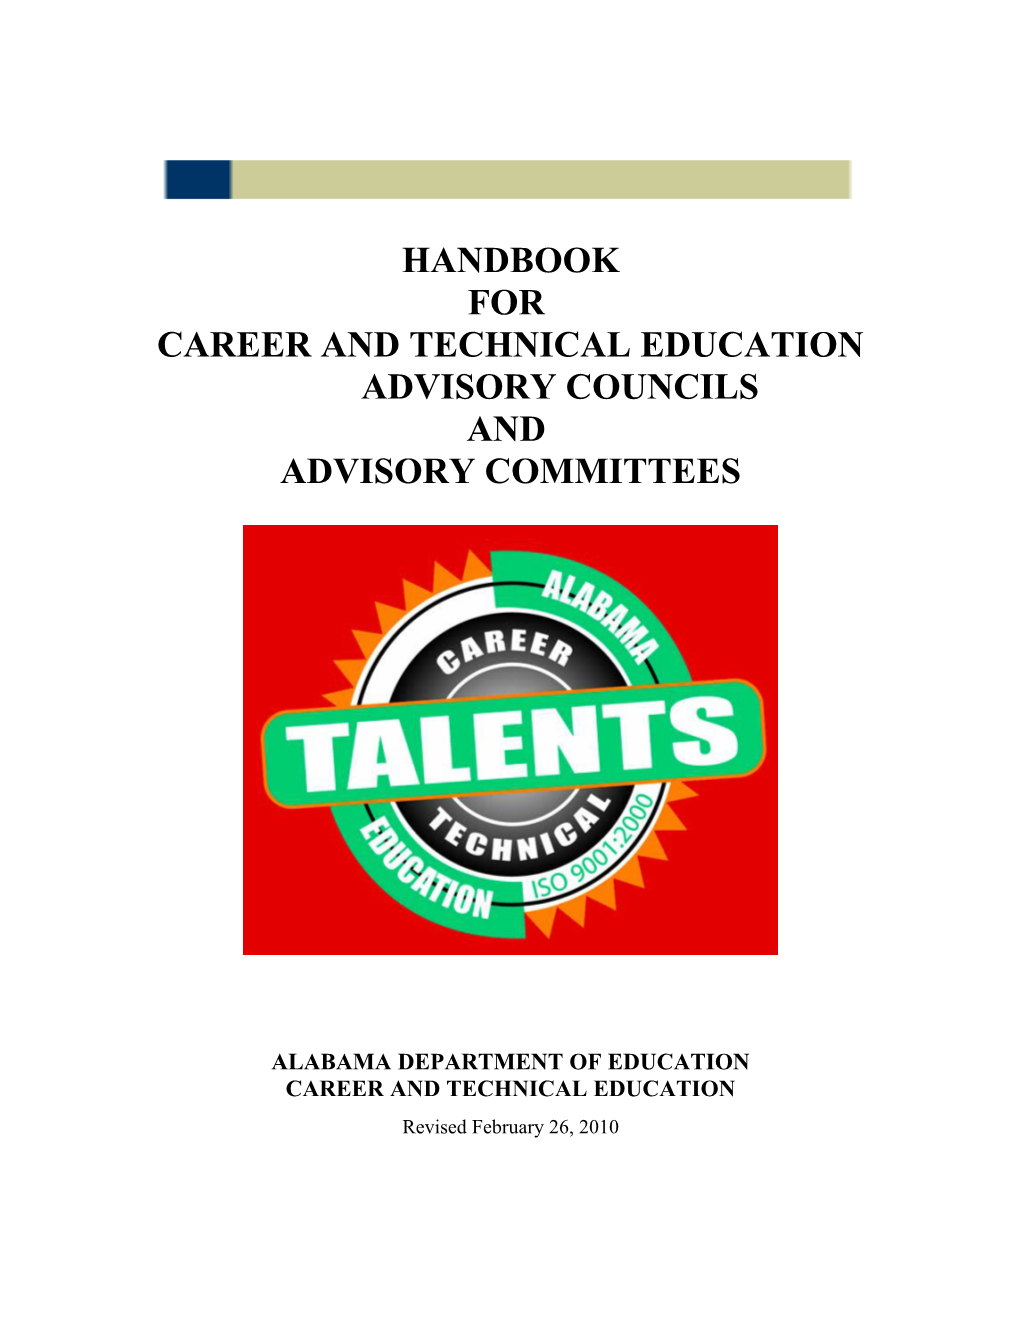 Advisory Committee Handbook 2010